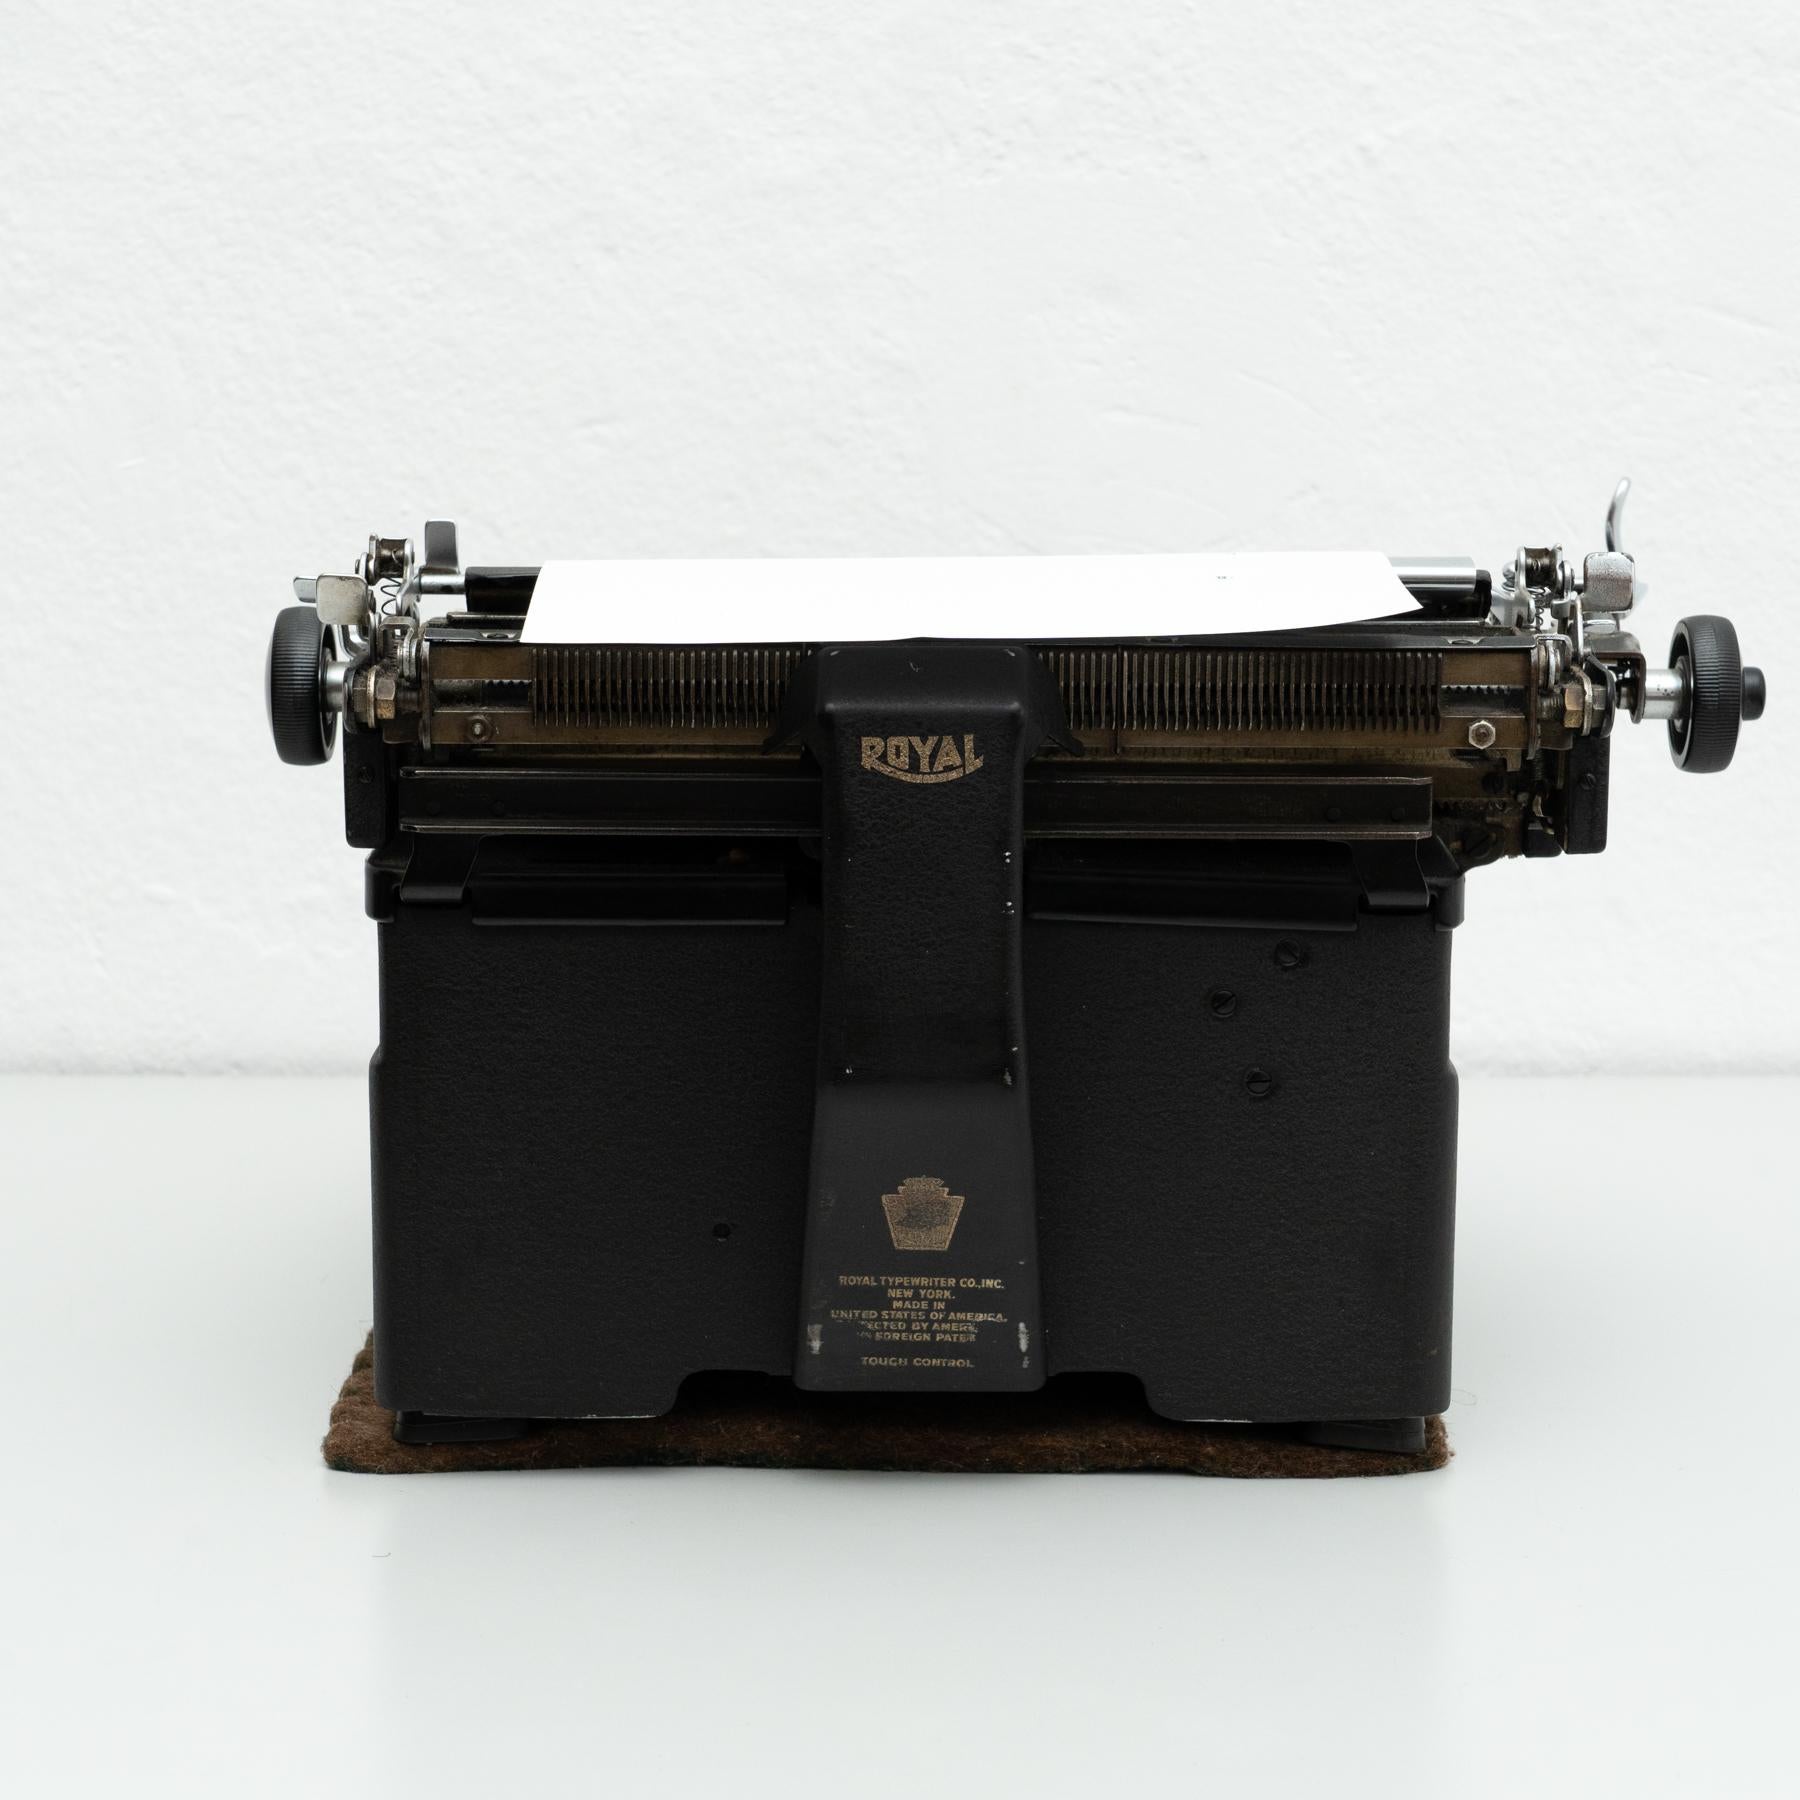 Spanish Antique Royal Typewriter Machine, circa 1920